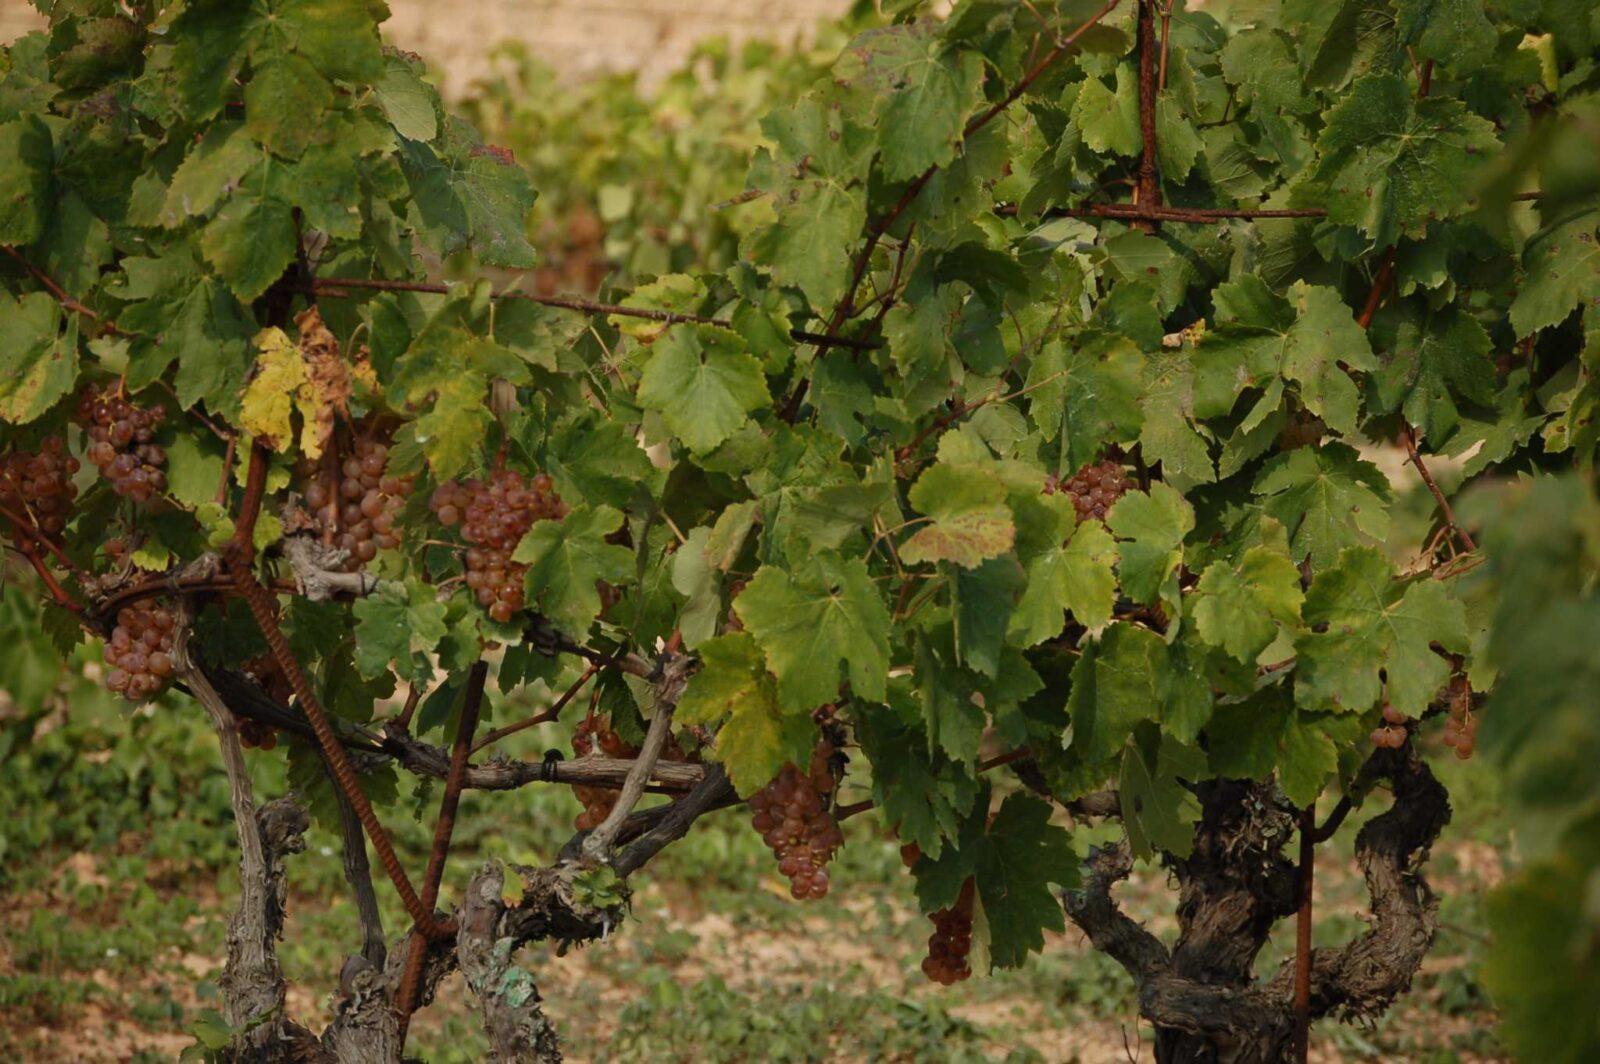 Les vinyes de cultiu ecològic a Viladellops